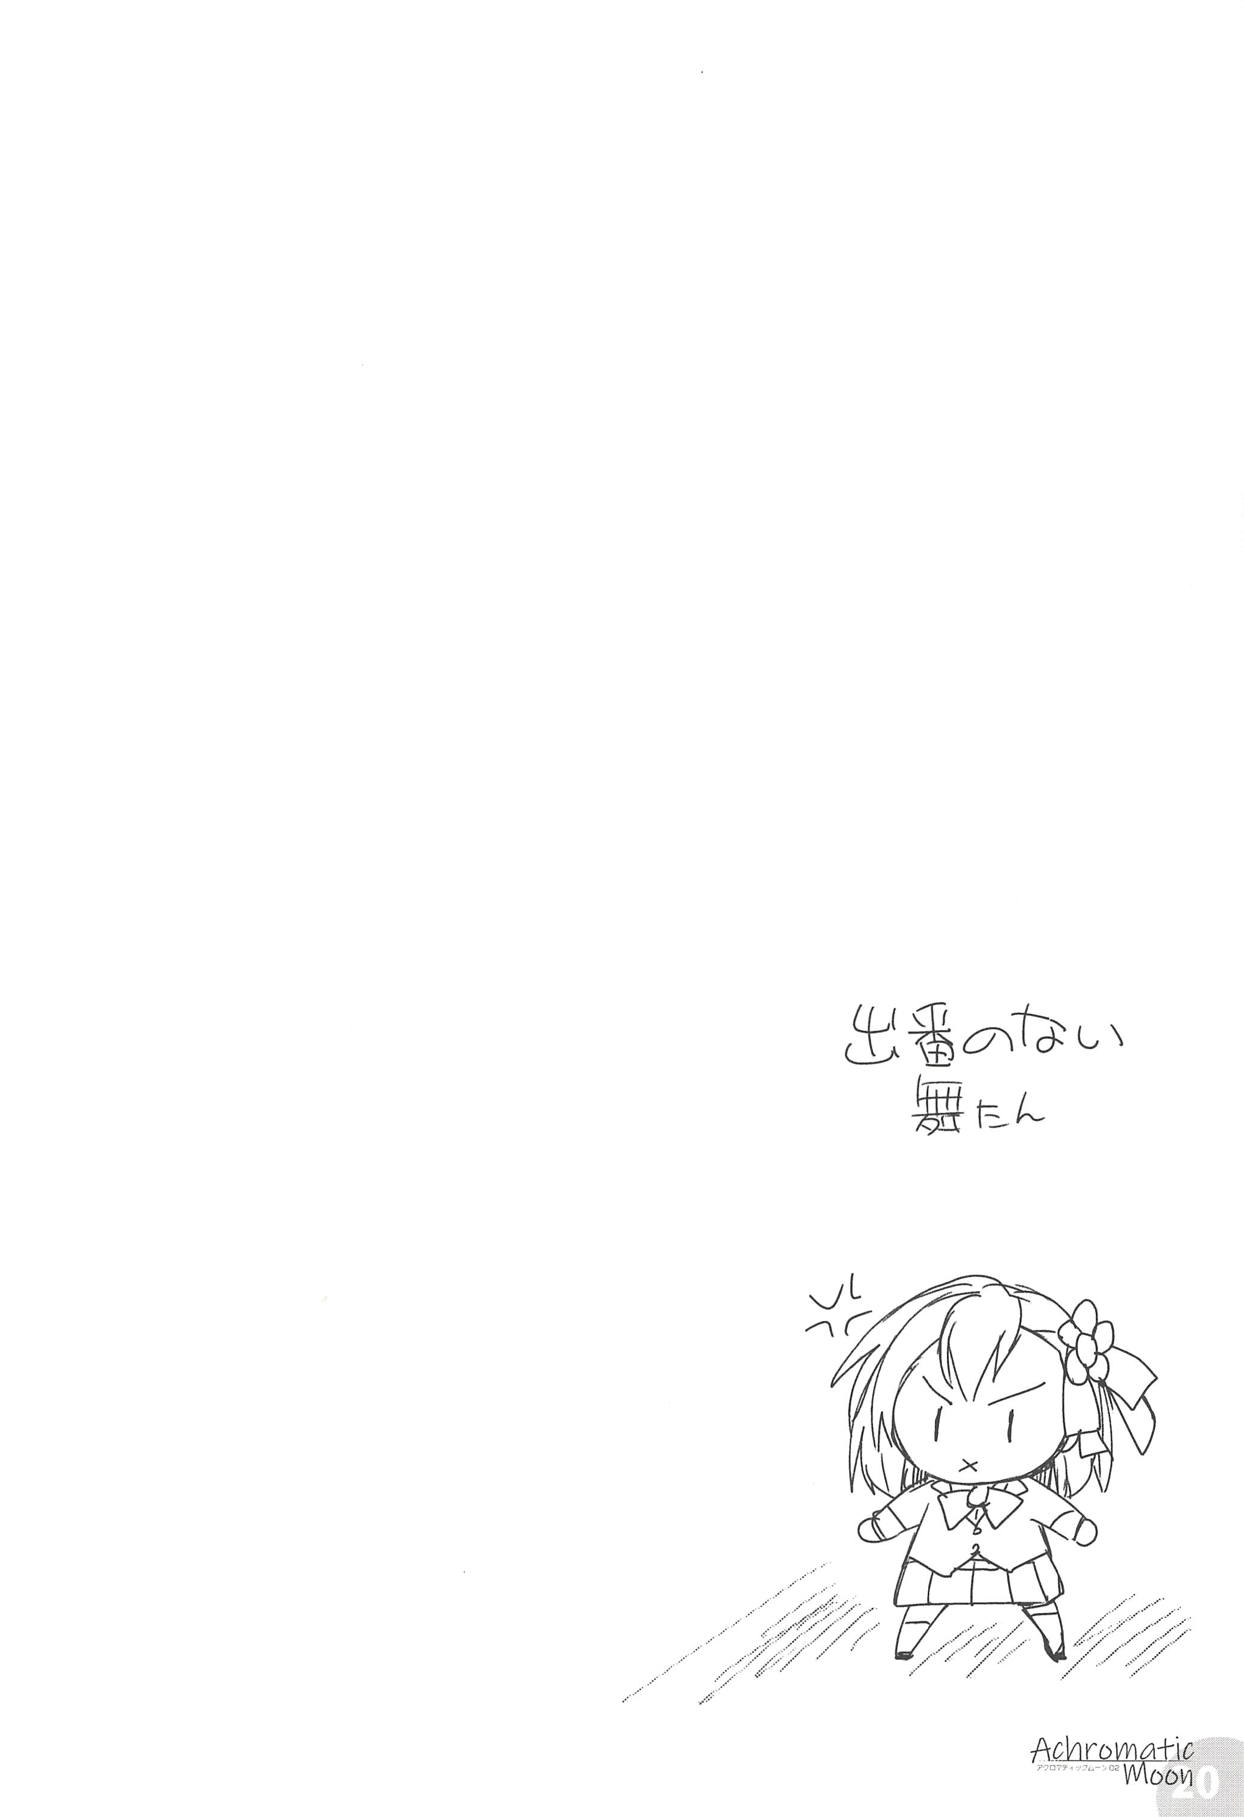 (COMIC1☆14) [わつき屋 (わつきるみ、結城成)] Achromatic Moon 02 (俺が好きなのは妹だけど妹じゃない)